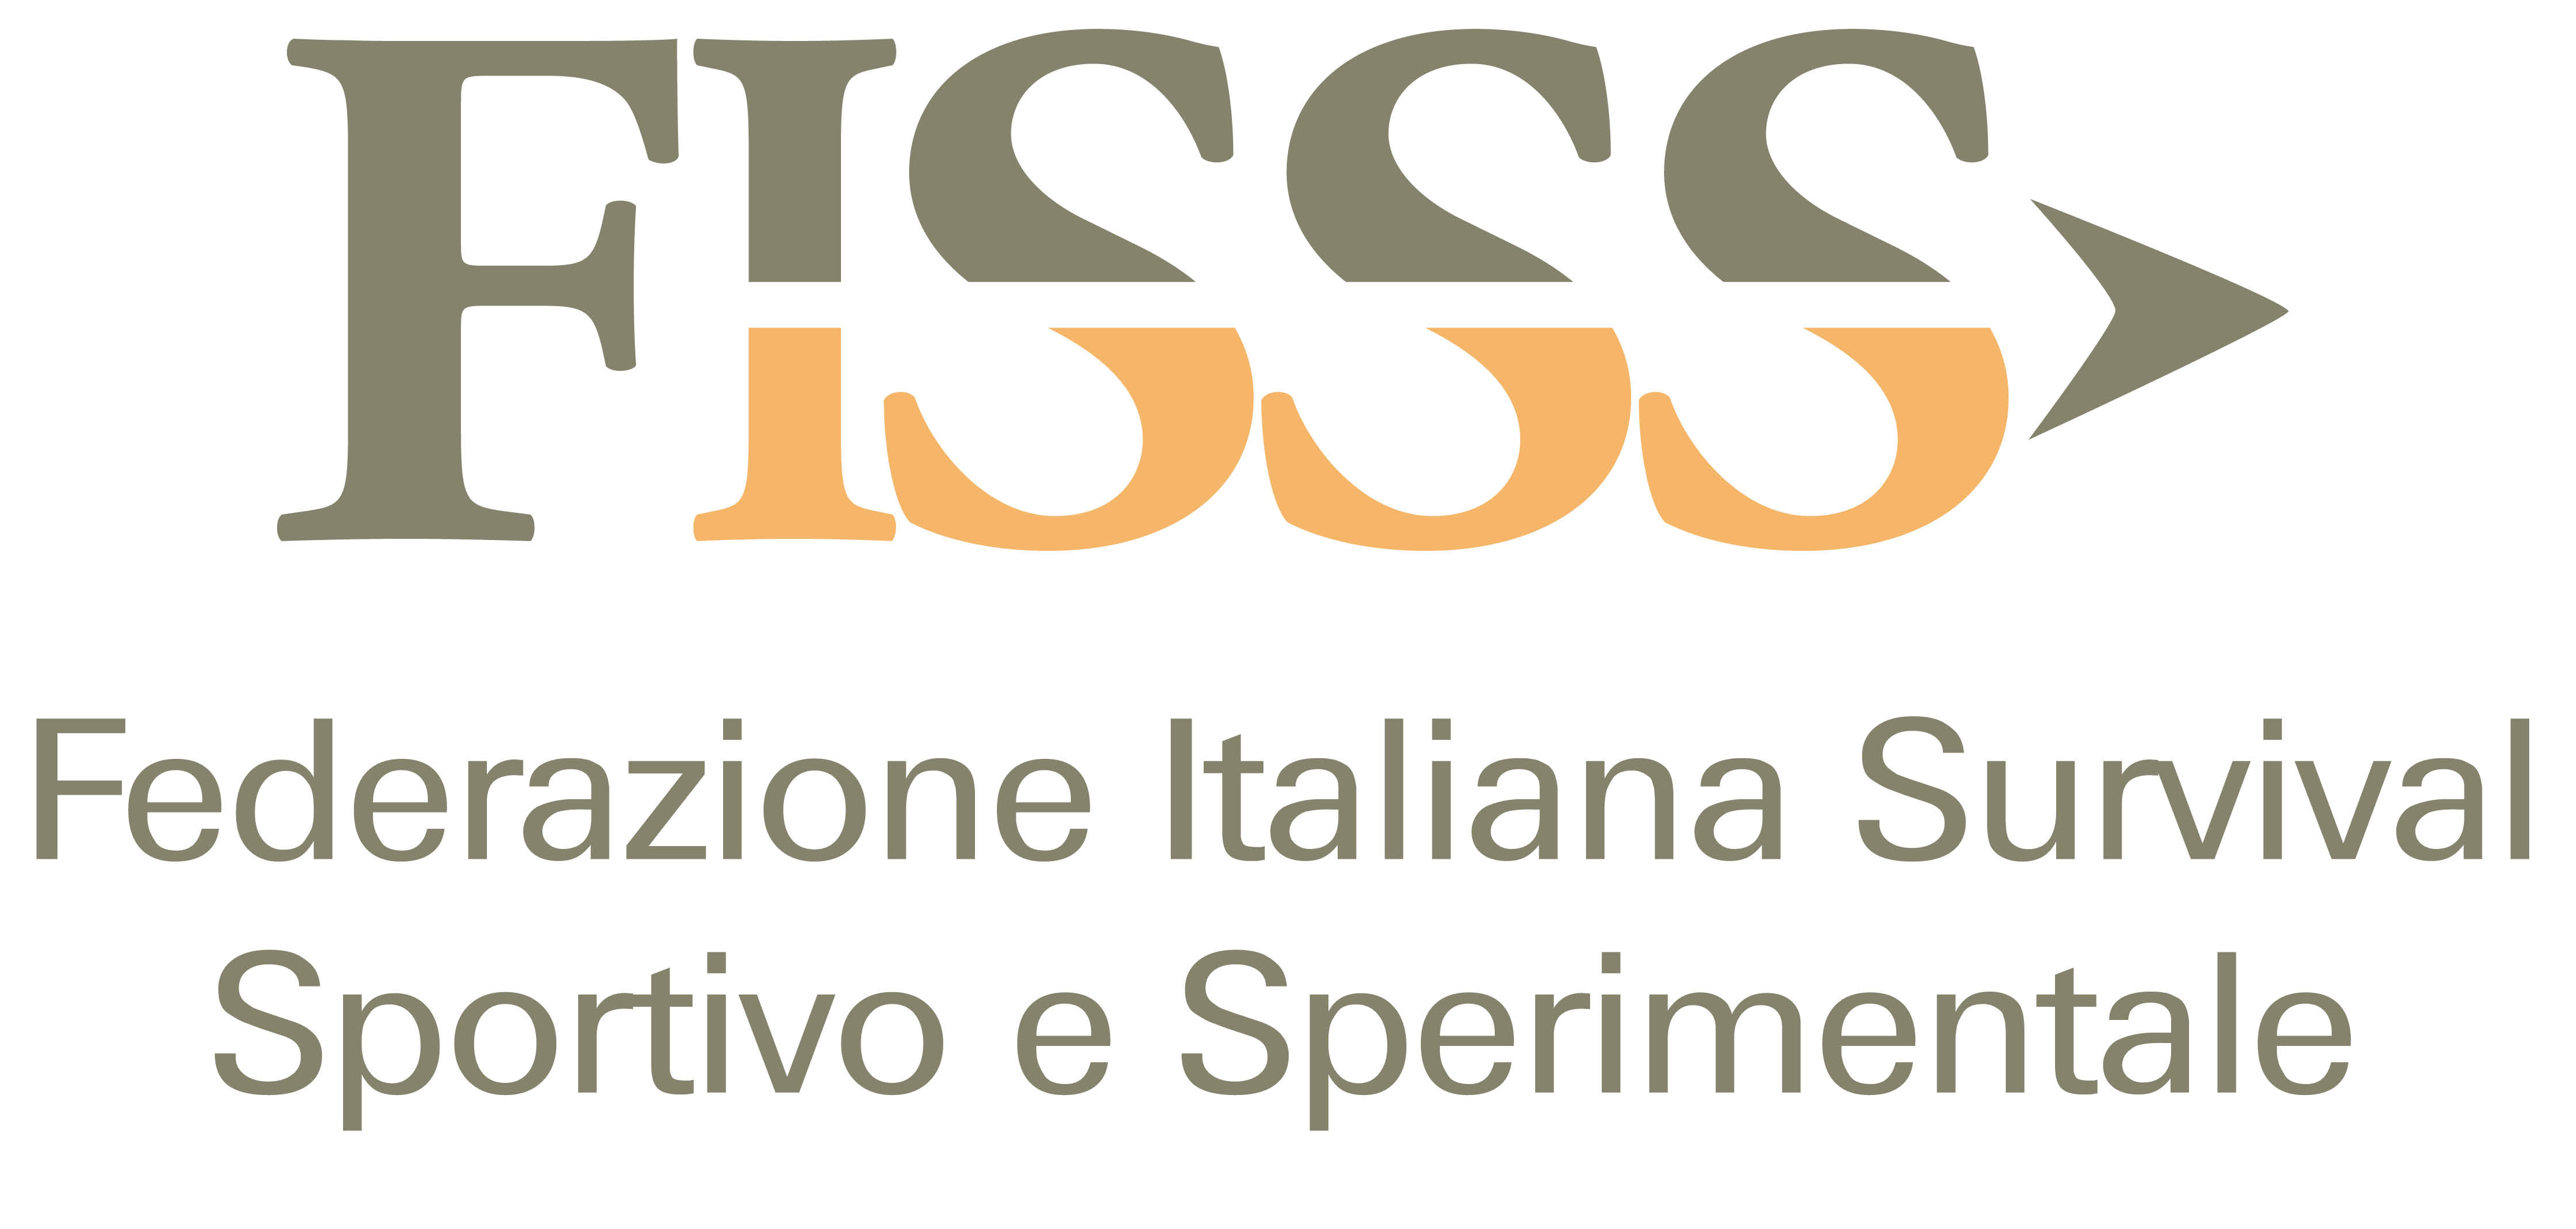 FISS logo